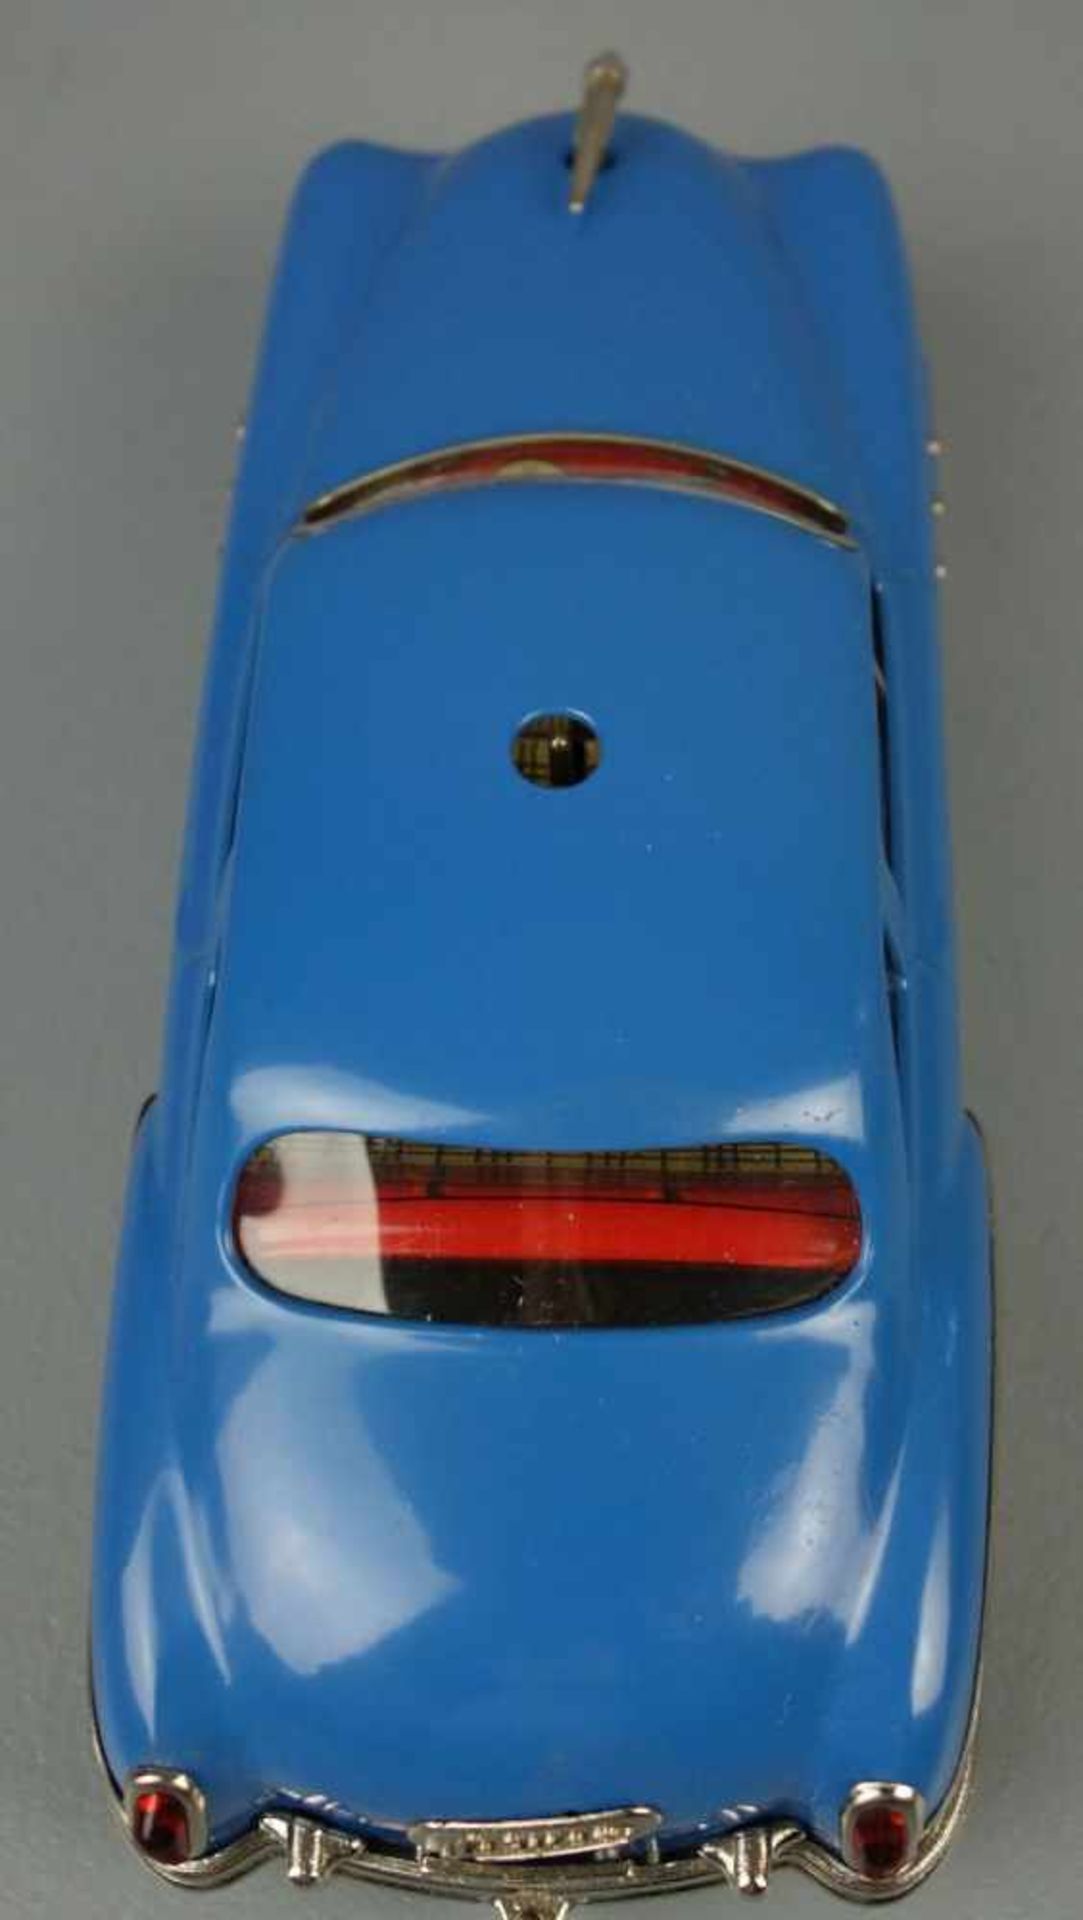 SCHUCO BLECHSPIELZEUG / FAHRZEUG : Auto Ingenico 5311 mit Zubehör / tin toy car, Manufaktur Schuco - - Bild 11 aus 11